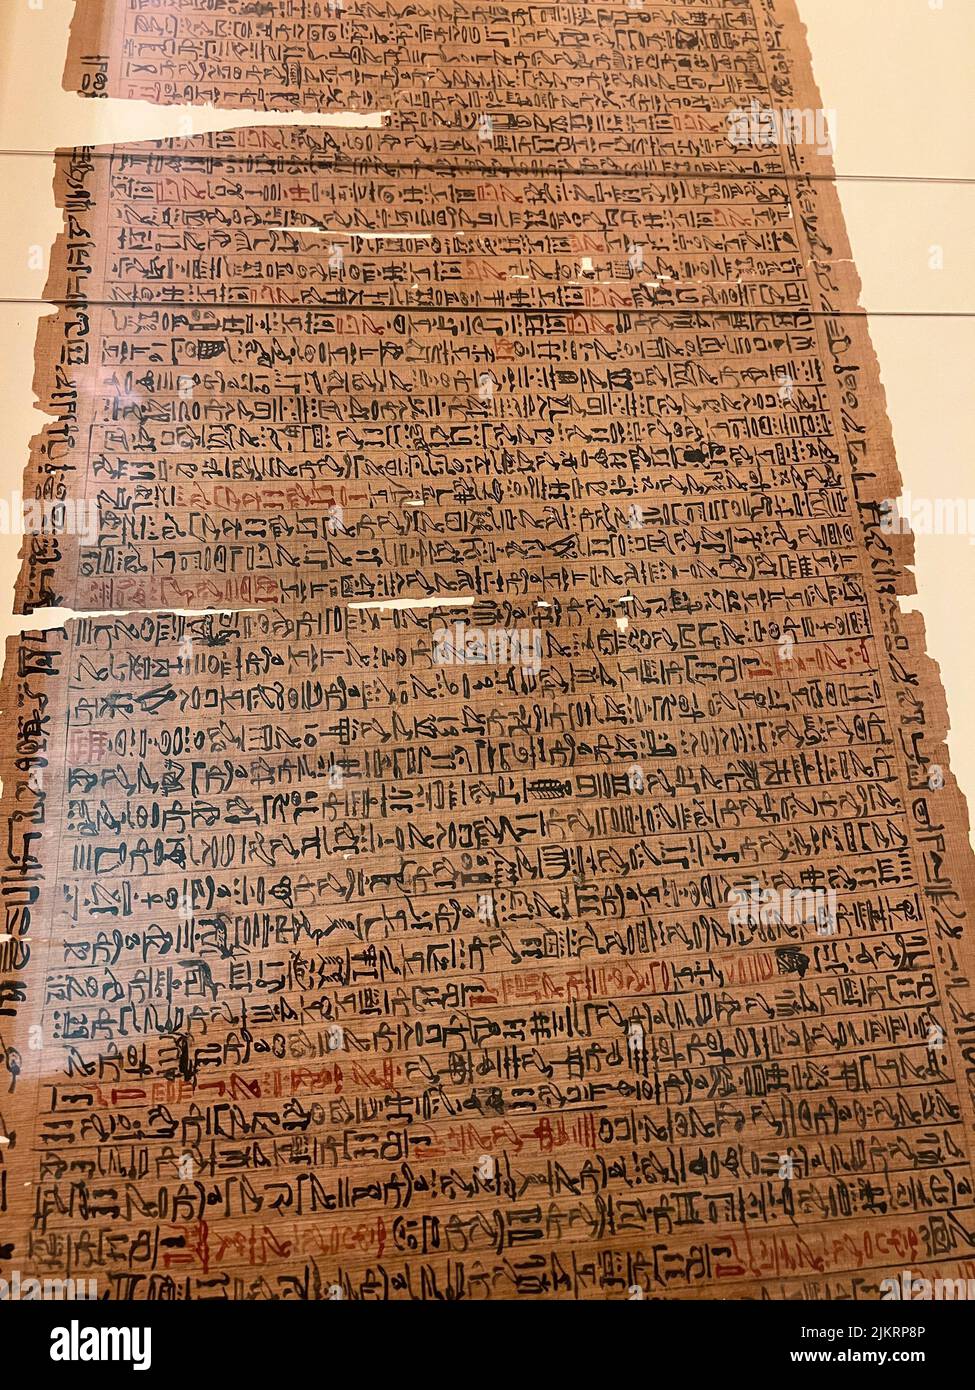 Aus dem Buch der Toten des Goldarbeiters von Amun, Sobekmose Papyrus, Tinte, Pigment New Kingdom, Dynasty 18, Wahrscheinlich Herrschaft von Thutmose krank zur Herrschaft von Amunhotep II, um 1479-1400 v. Chr. Dies ist einer der wichtigsten religiösen Texte des Neuen Reiches, zum Teil, weil es sich um eine frühe Version handelt, die die Entwicklung aller späteren Totenbücher enthüllt. Der Papyrus ist etwa fünfundzwanzig Meter lang, beidseitig eingeschrieben (eine seltene Eigenschaft) und enthält fast hundert "Kapitel", fast die Hälfte der insgesamt bekannten Gruppe von Book of the Dead-Texten. Stockfoto